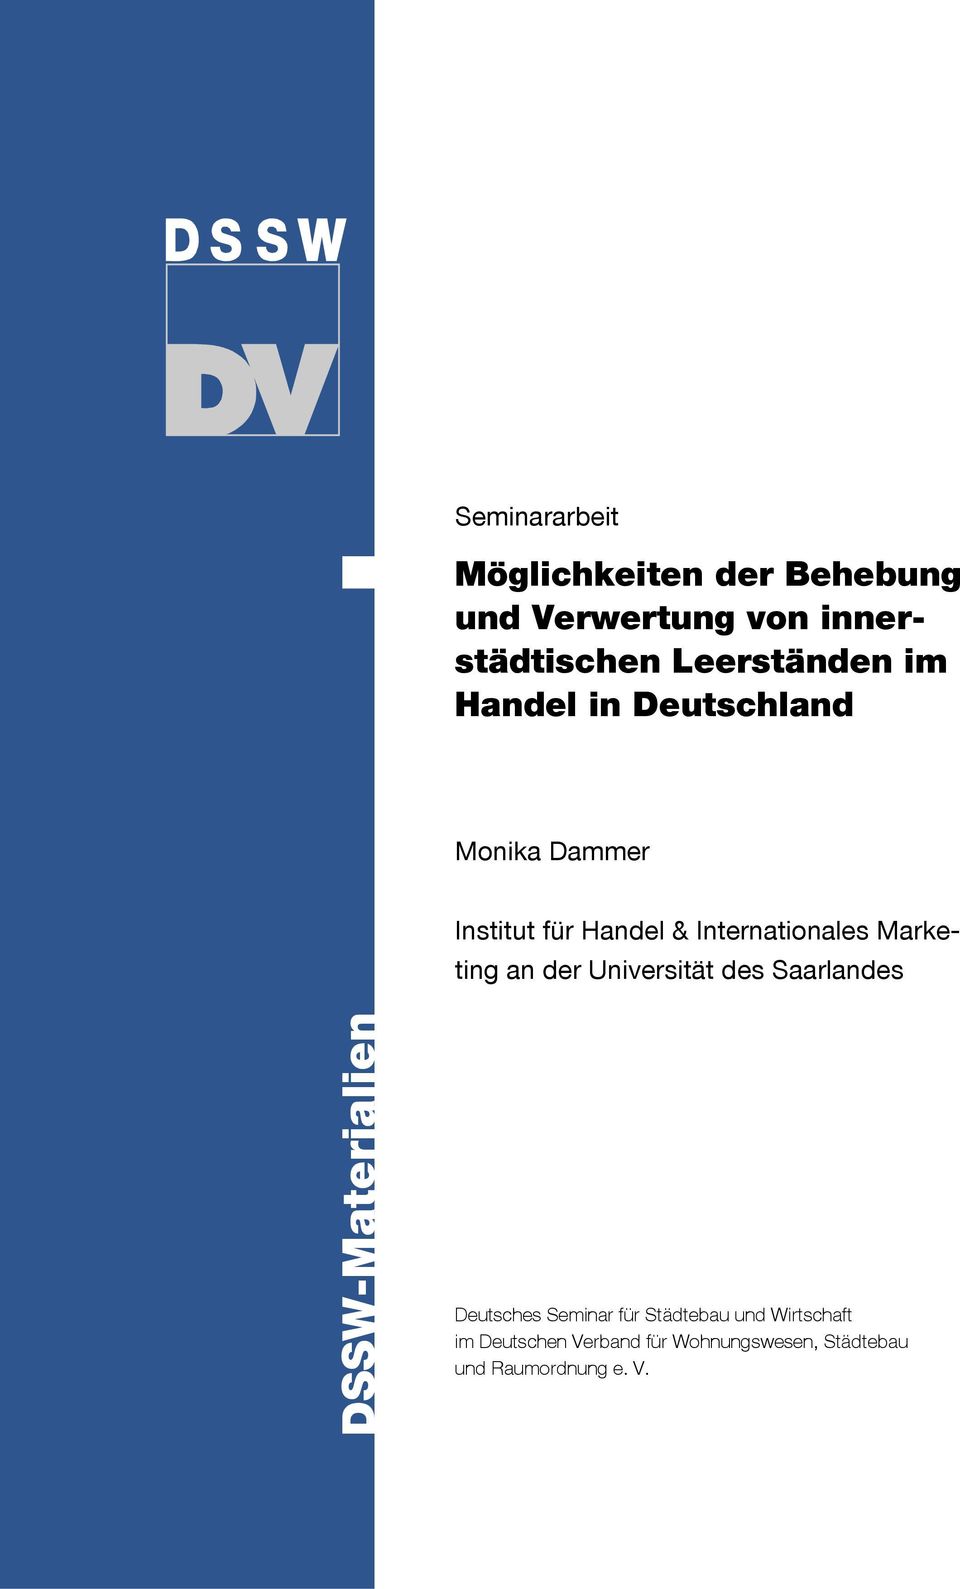 Internationales Marketing an der Universität des Saarlandes DSSW-Materialien Deutsches